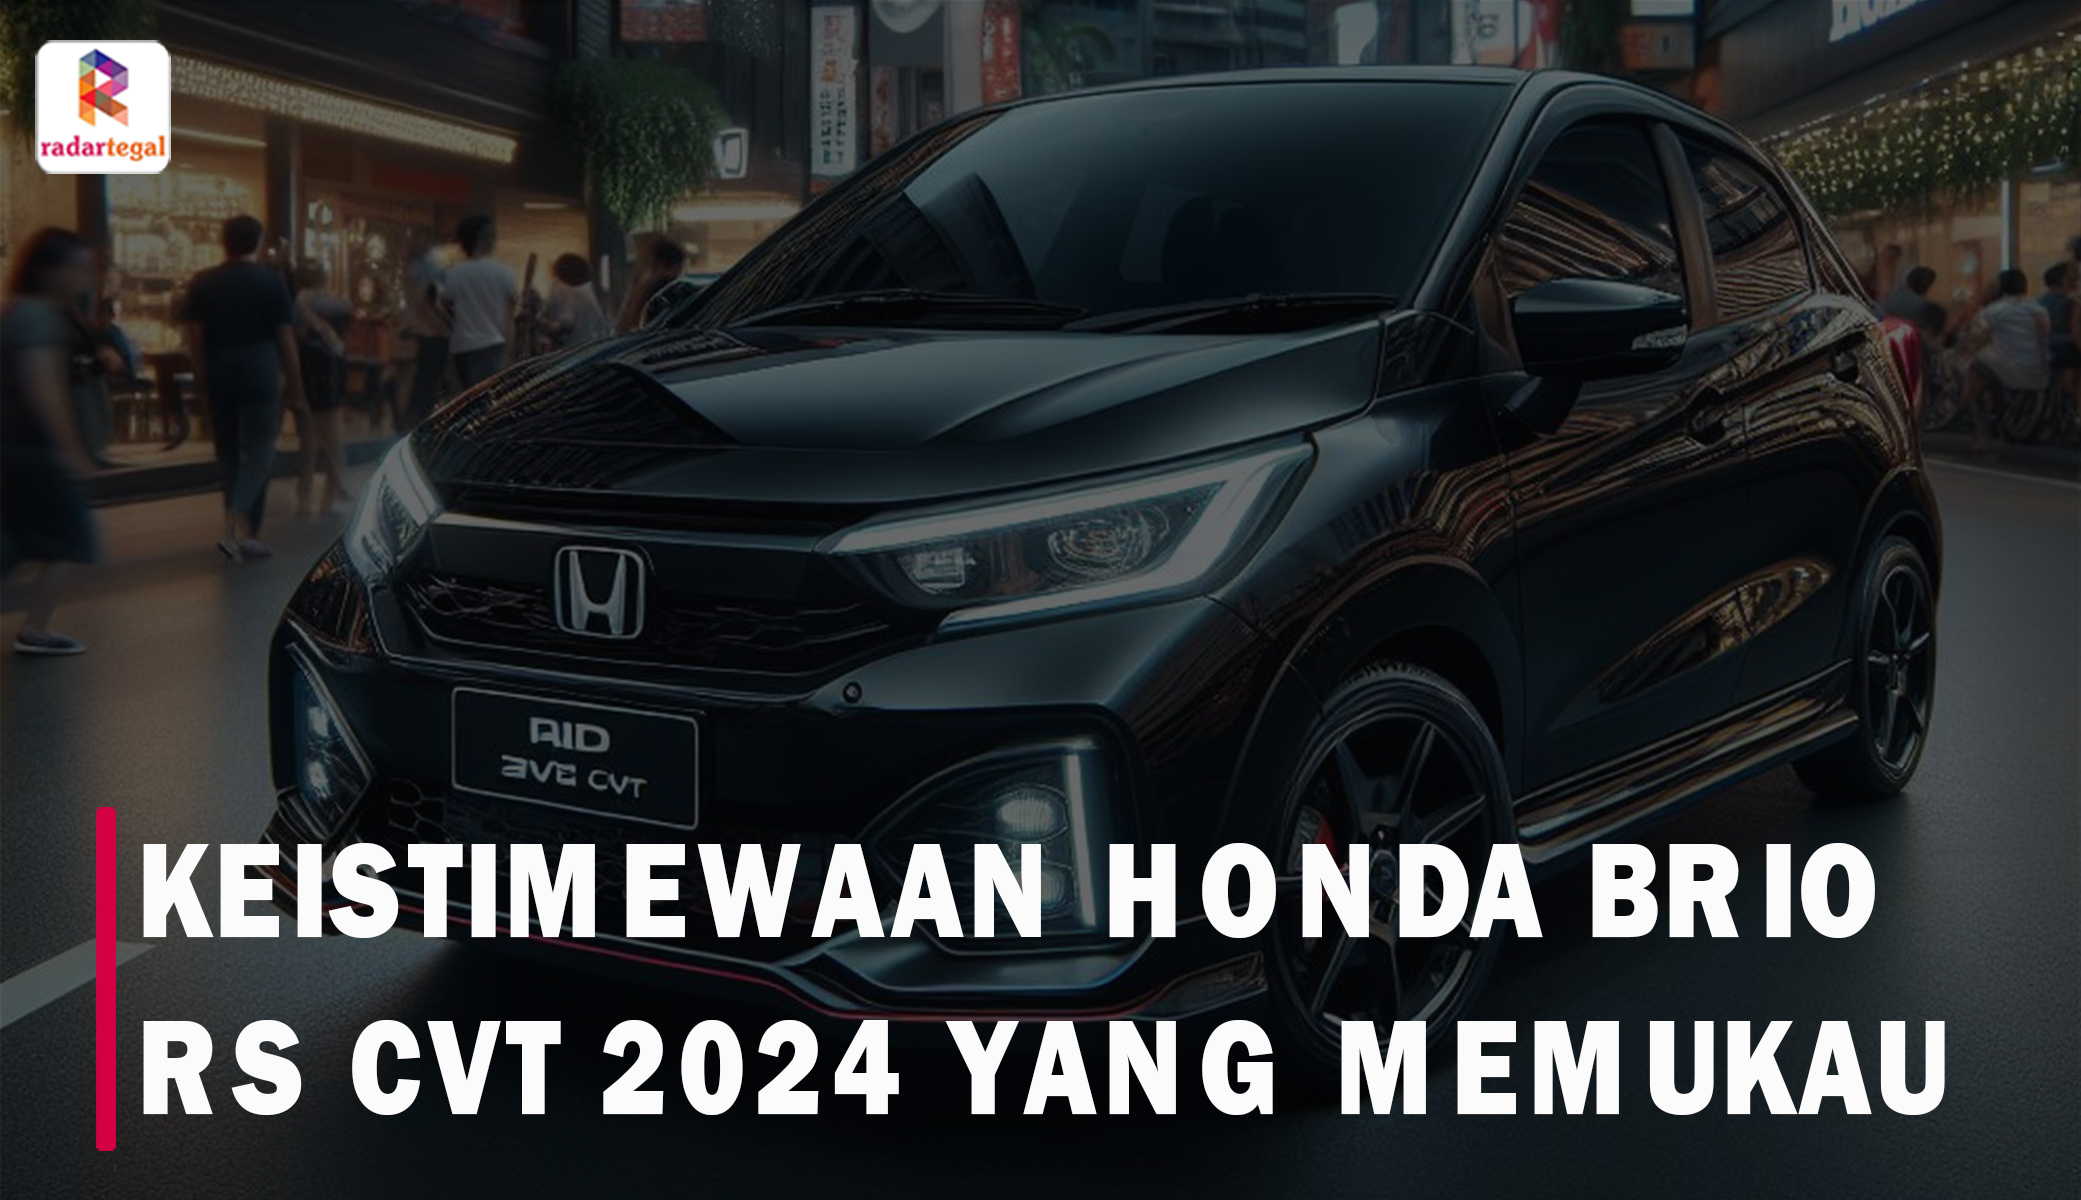 Keistimewaan Honda Brio RS CVT 2024 yang Memukau, Membuatnya Berbeda dari yang Lain